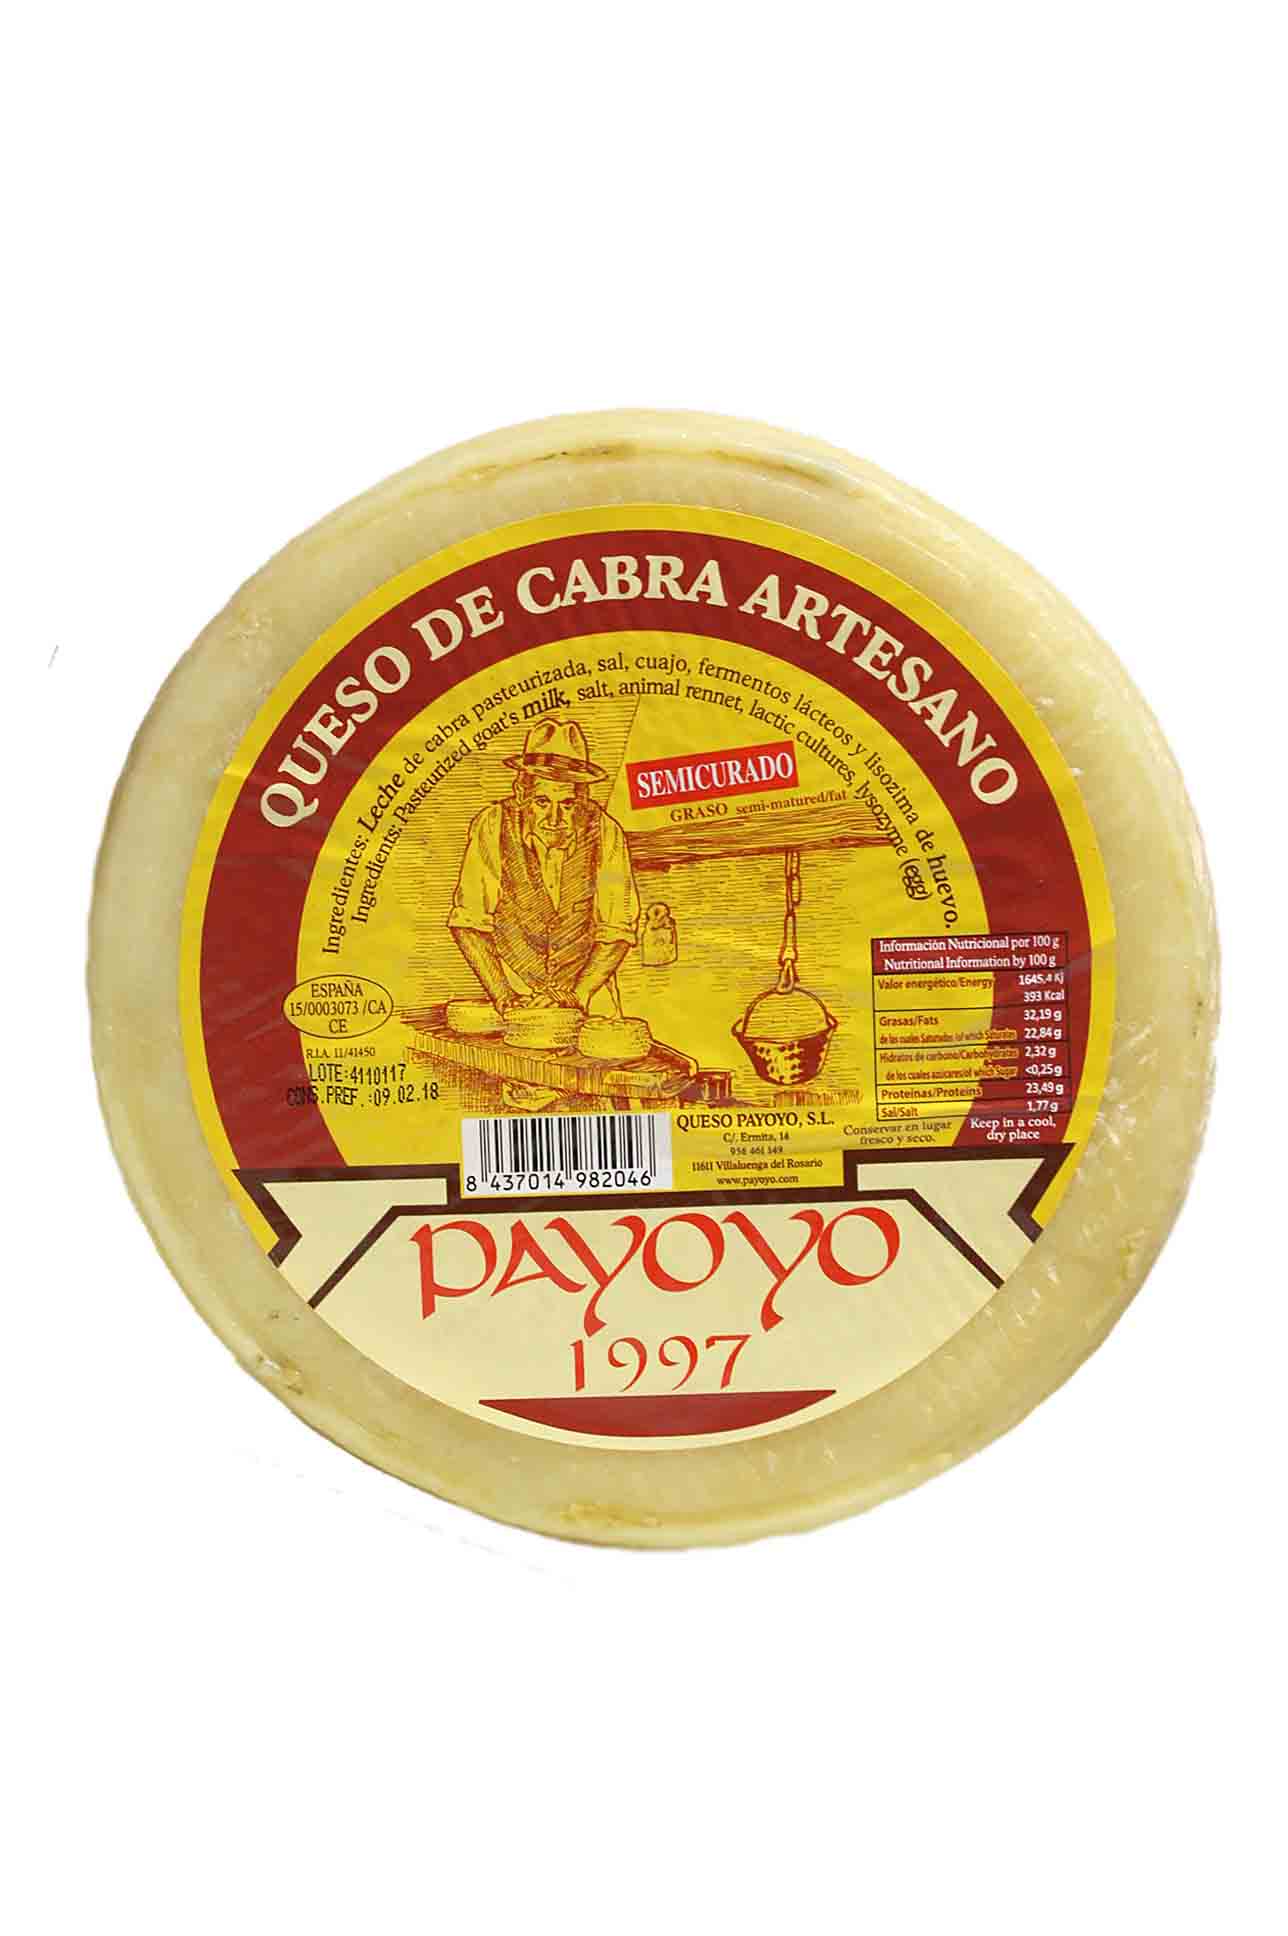 Payoyo cheese